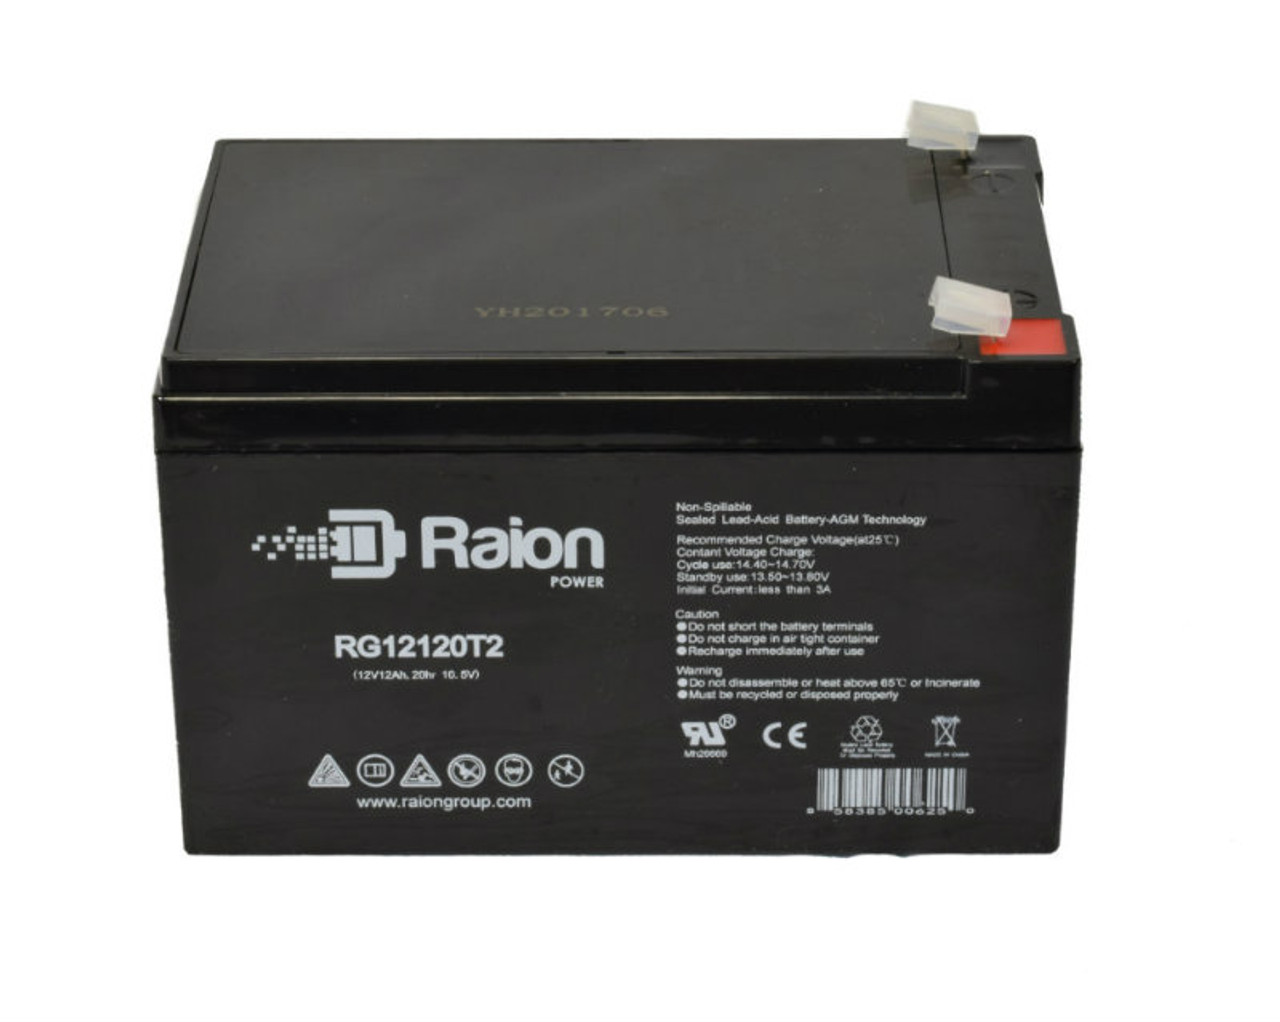 Raion Power RG12120T2 SLA Battery for Pulmonetics LTV 950, 1000 II Ventilator External Battery 11475